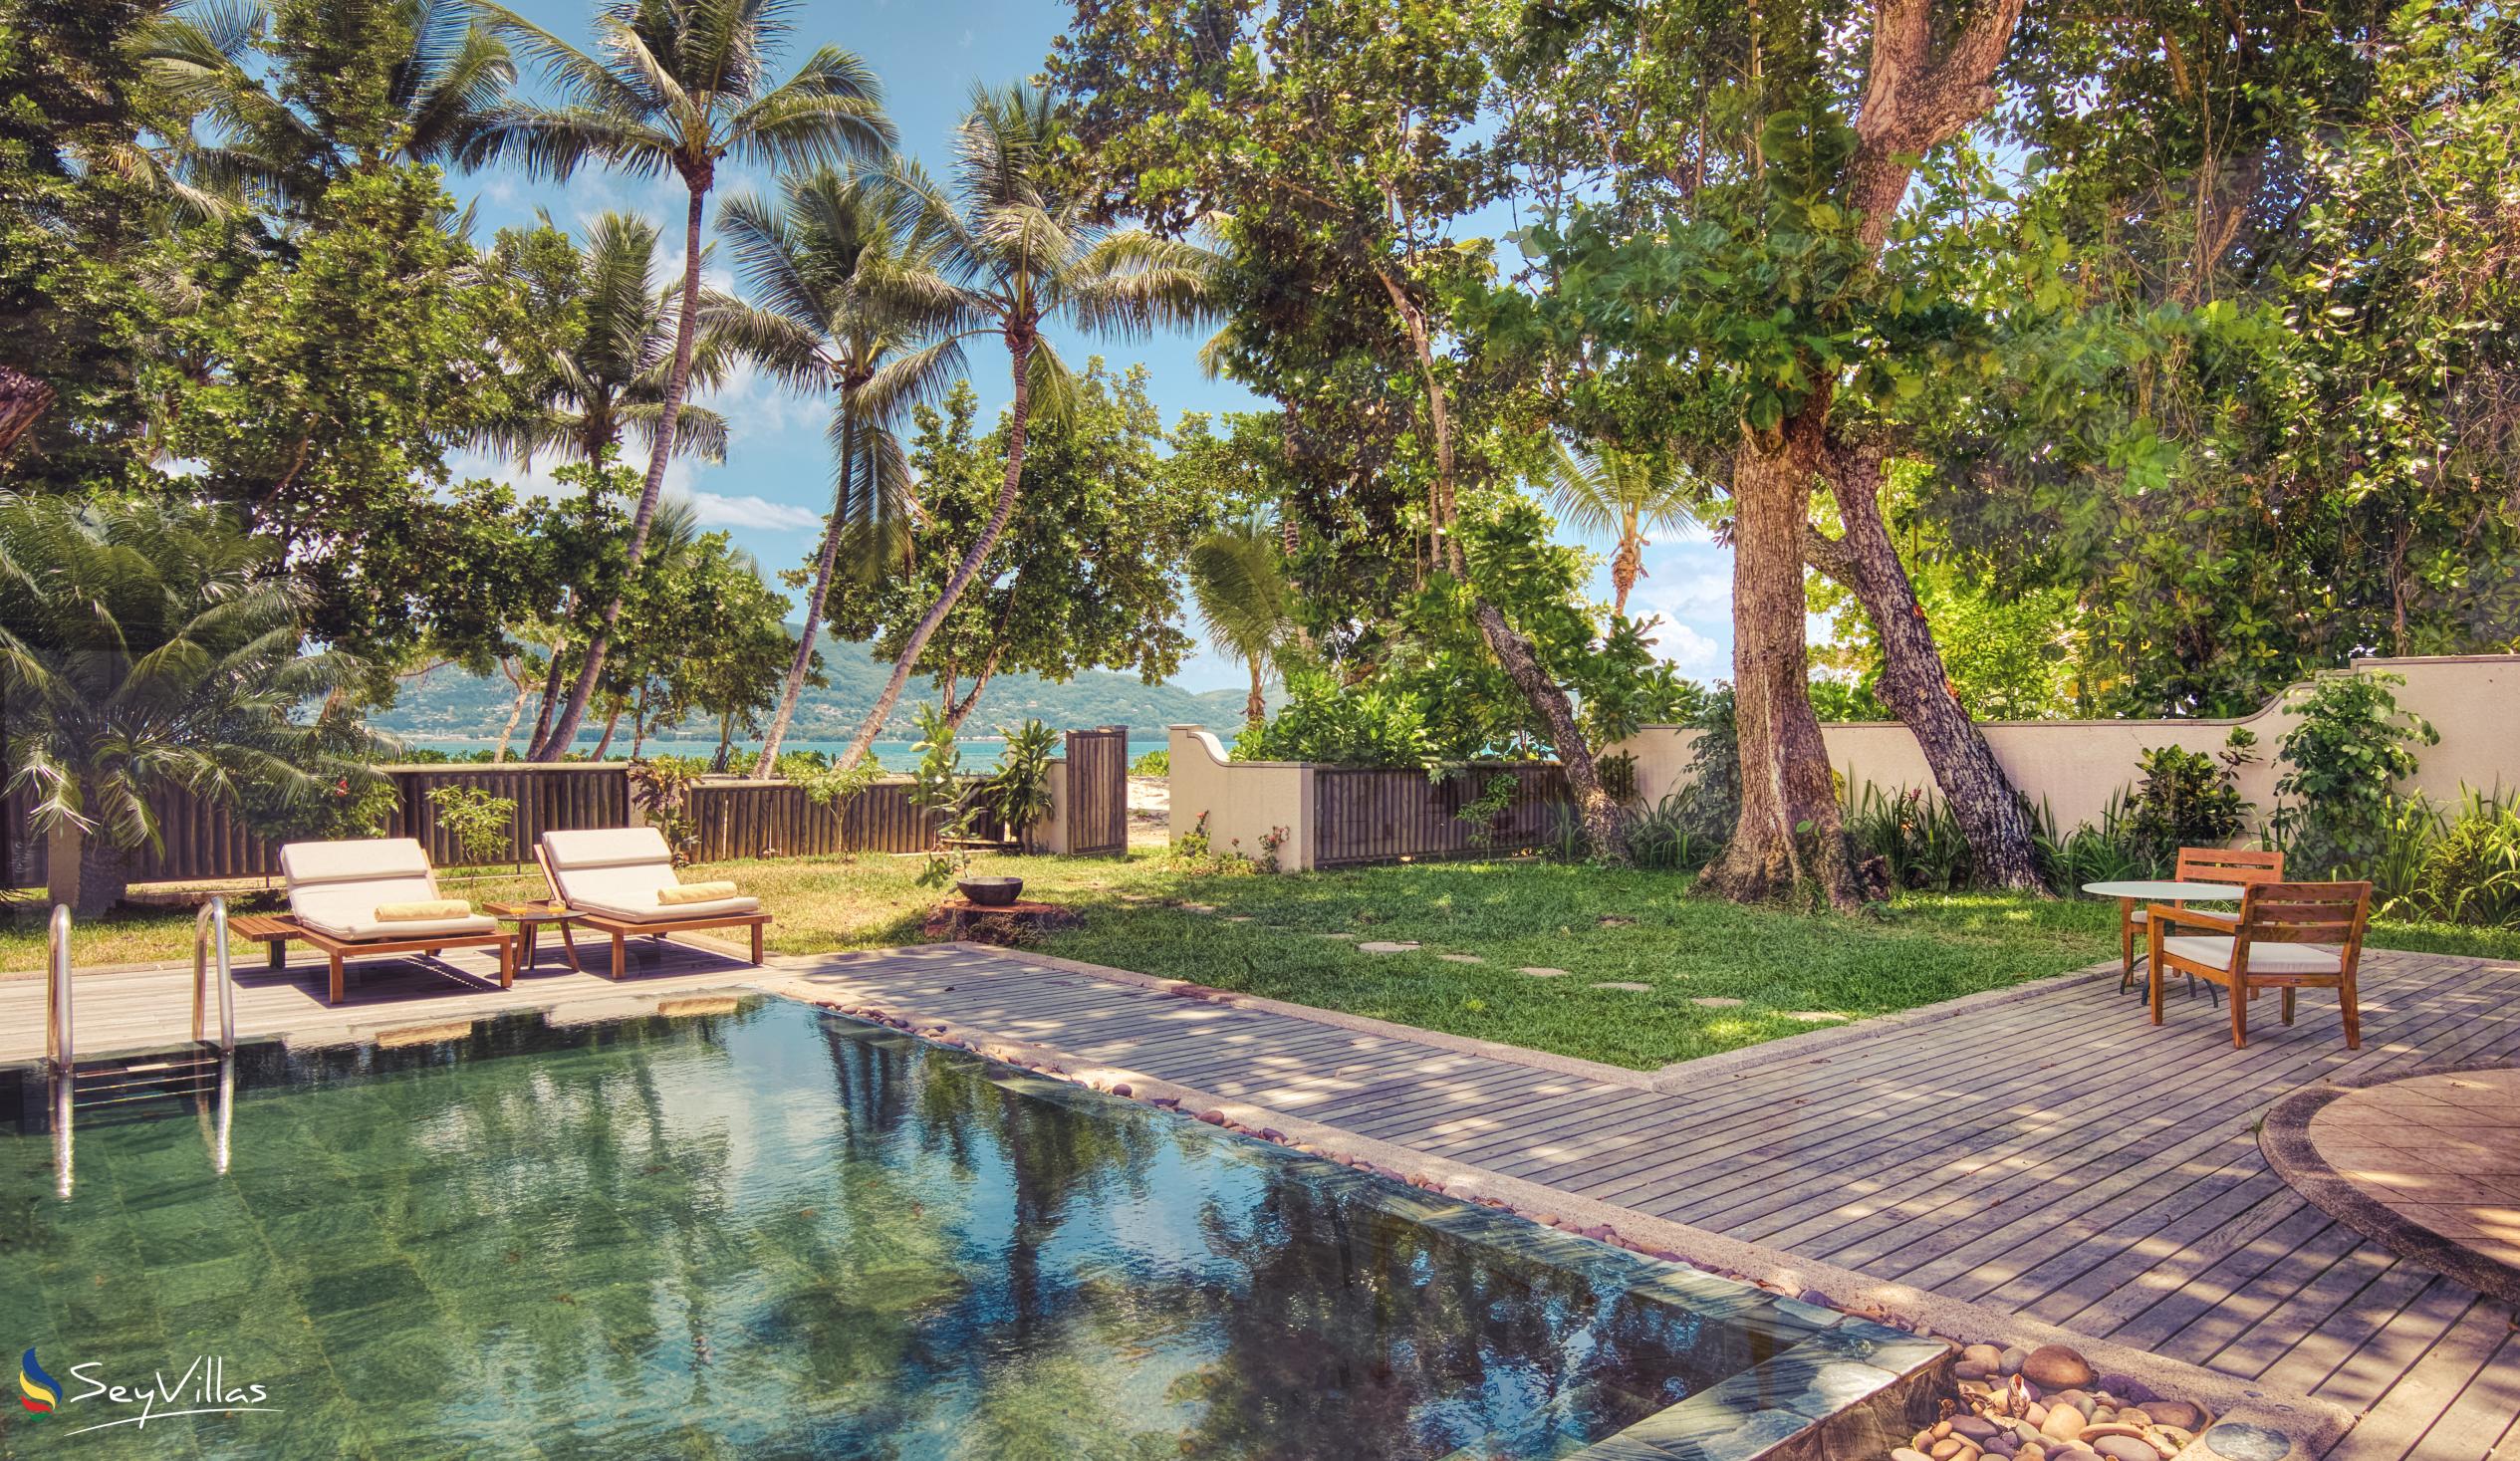 Foto 138: Club Med Seychelles - Suite avec vue sur la mer et piscine privée - Saint Anne (Seychelles)